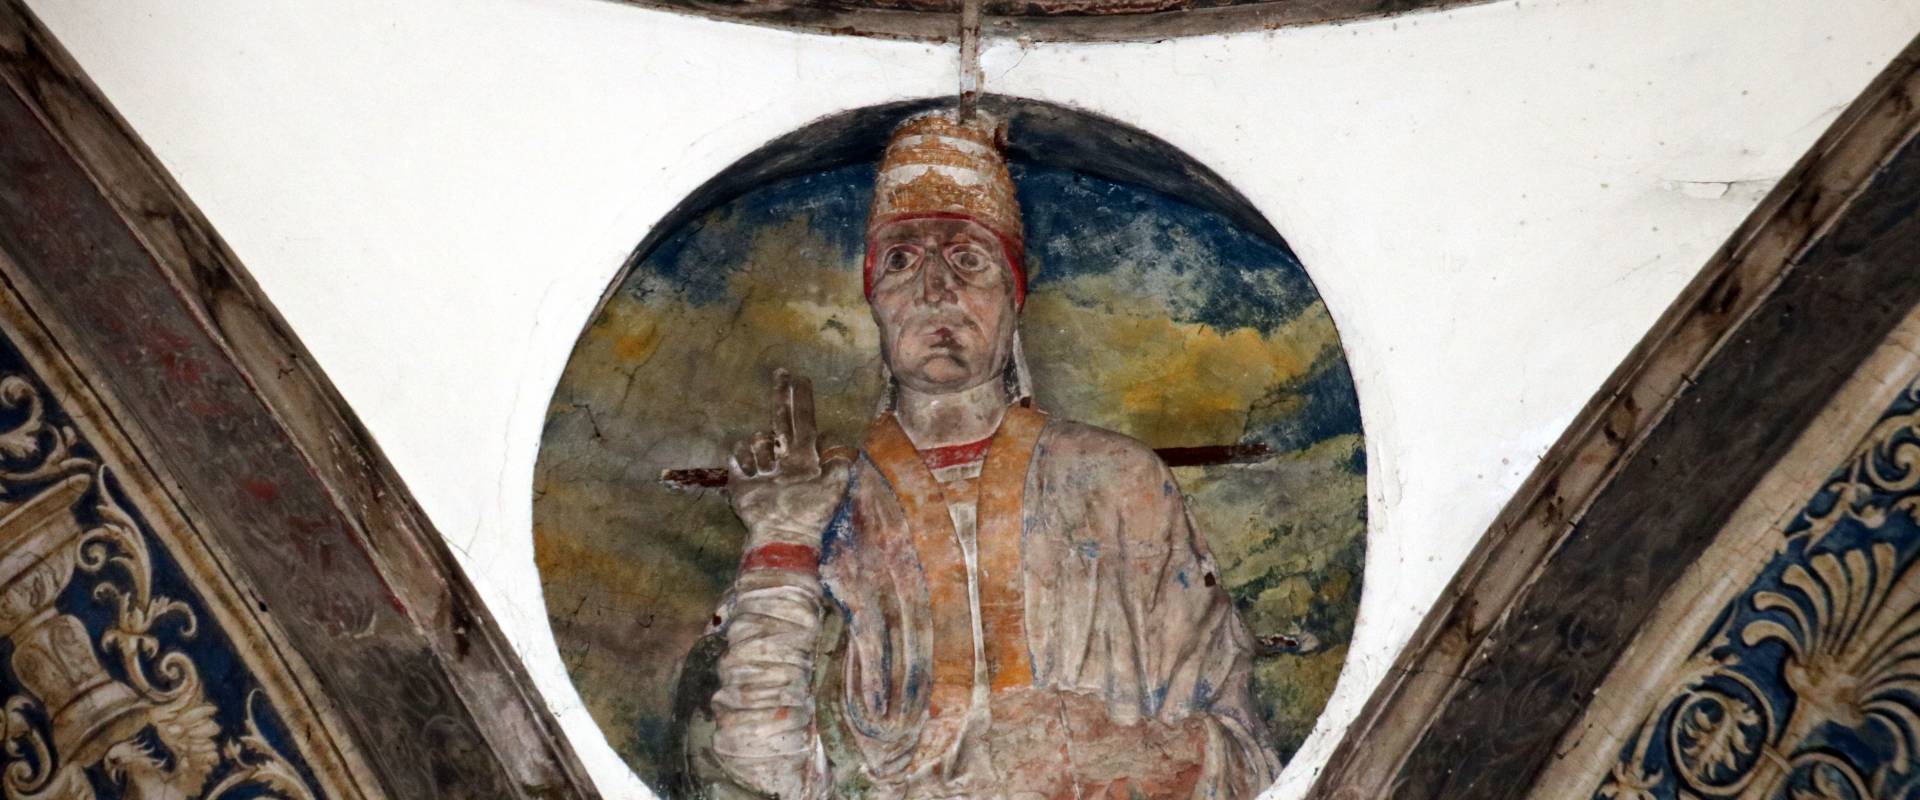 Chiesa di San Sisto (Piacenza), interno 79 foto di Mongolo1984